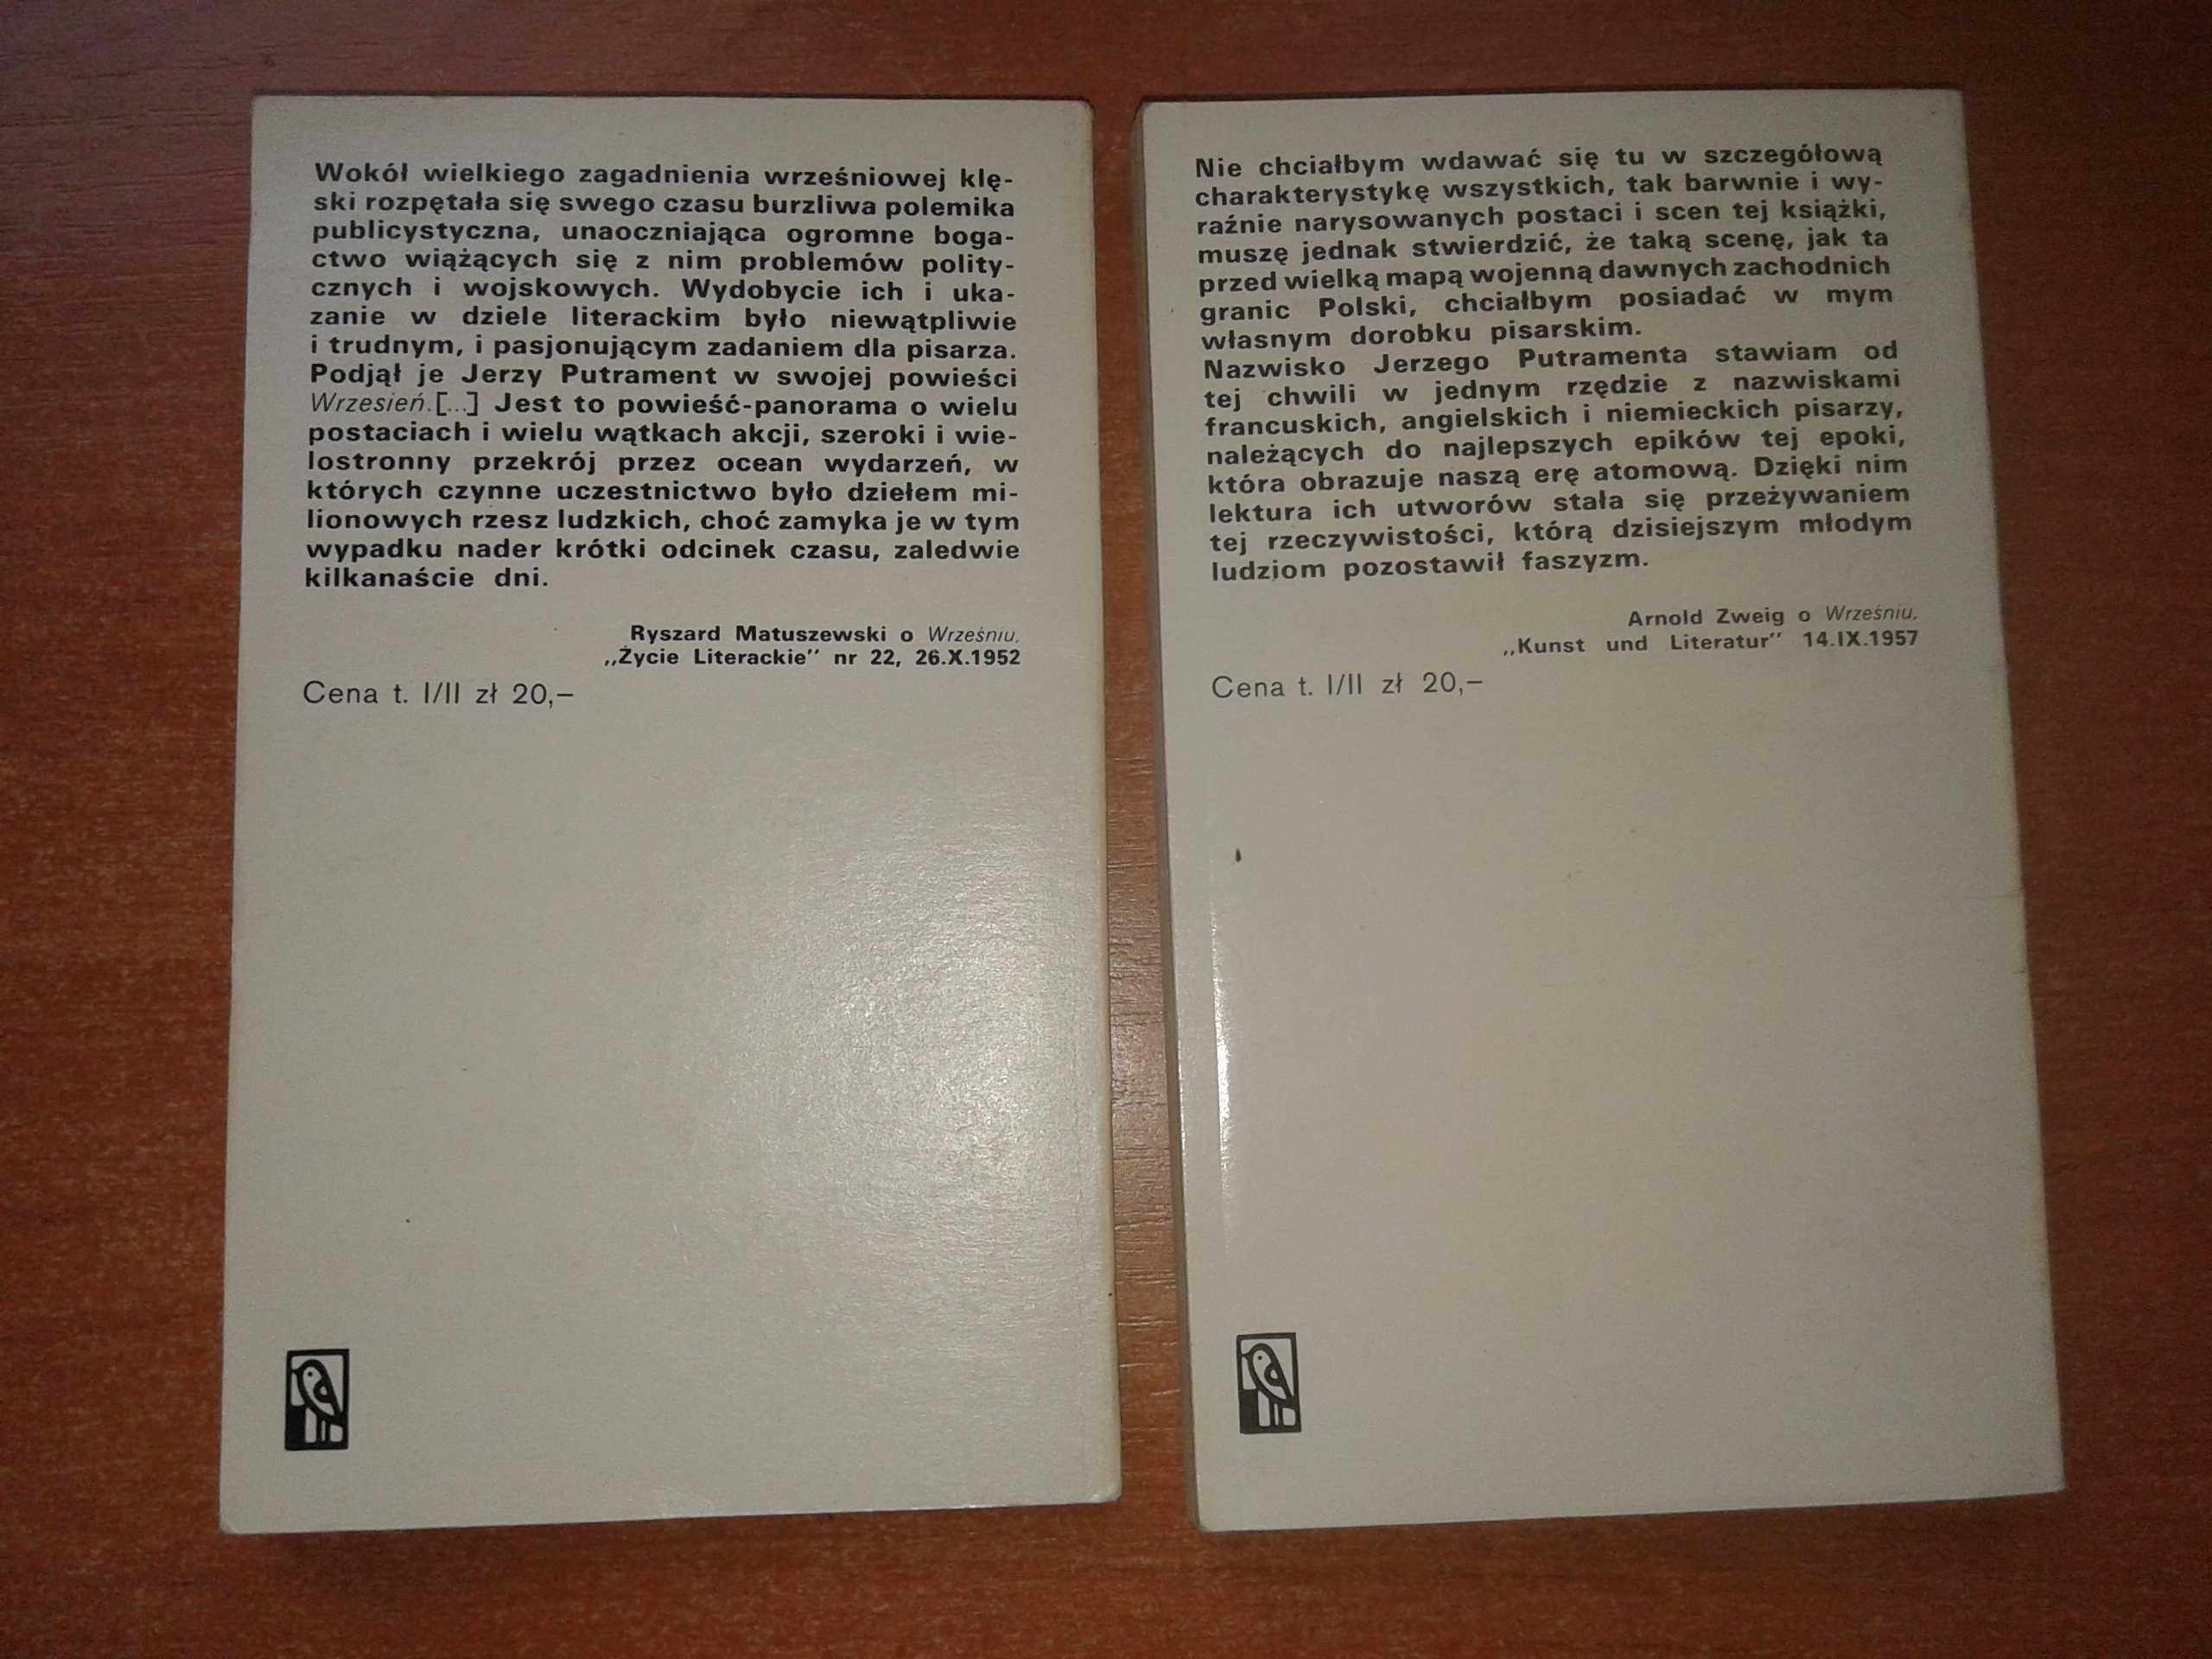 Wrzesień - Jerzy Putrament tom 1 oraz tom 2 -cena za zestaw